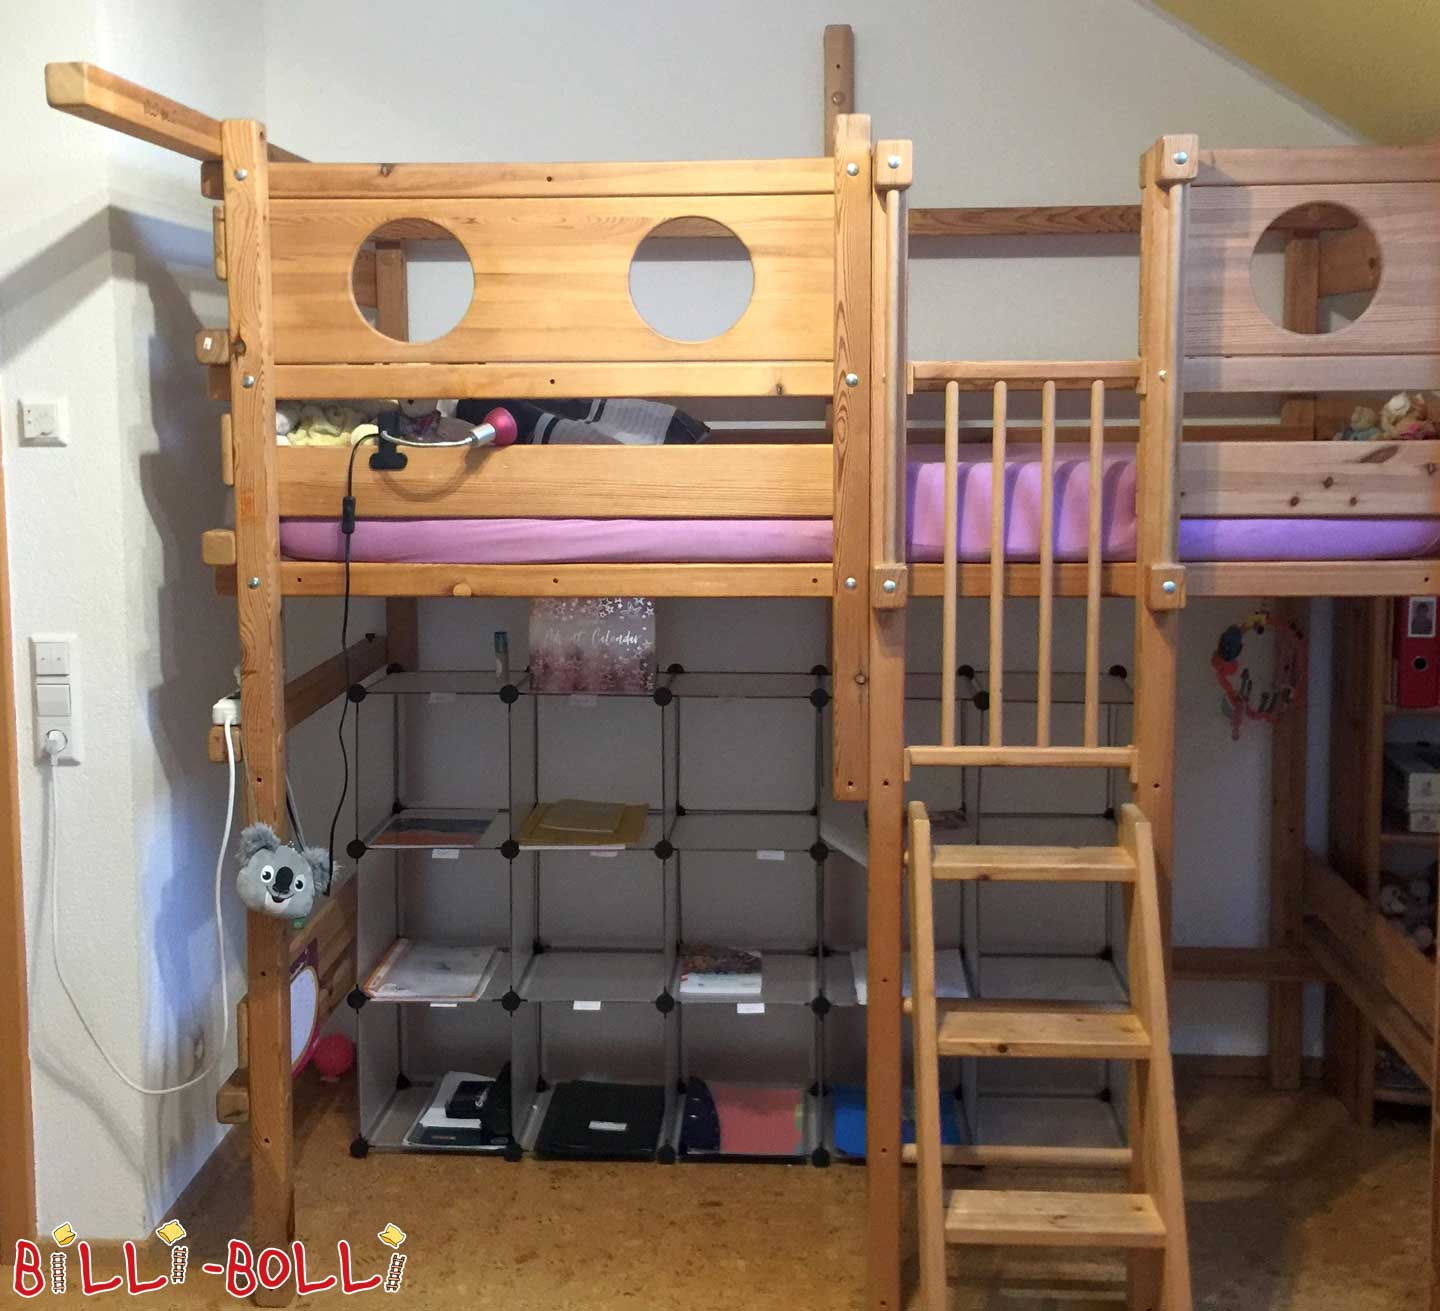 Palėpės lova, auganti su vaiku, žandikaulis neapdorotas, kopėčių padėtis B (Kategorija: Naudojama palėpės lova)